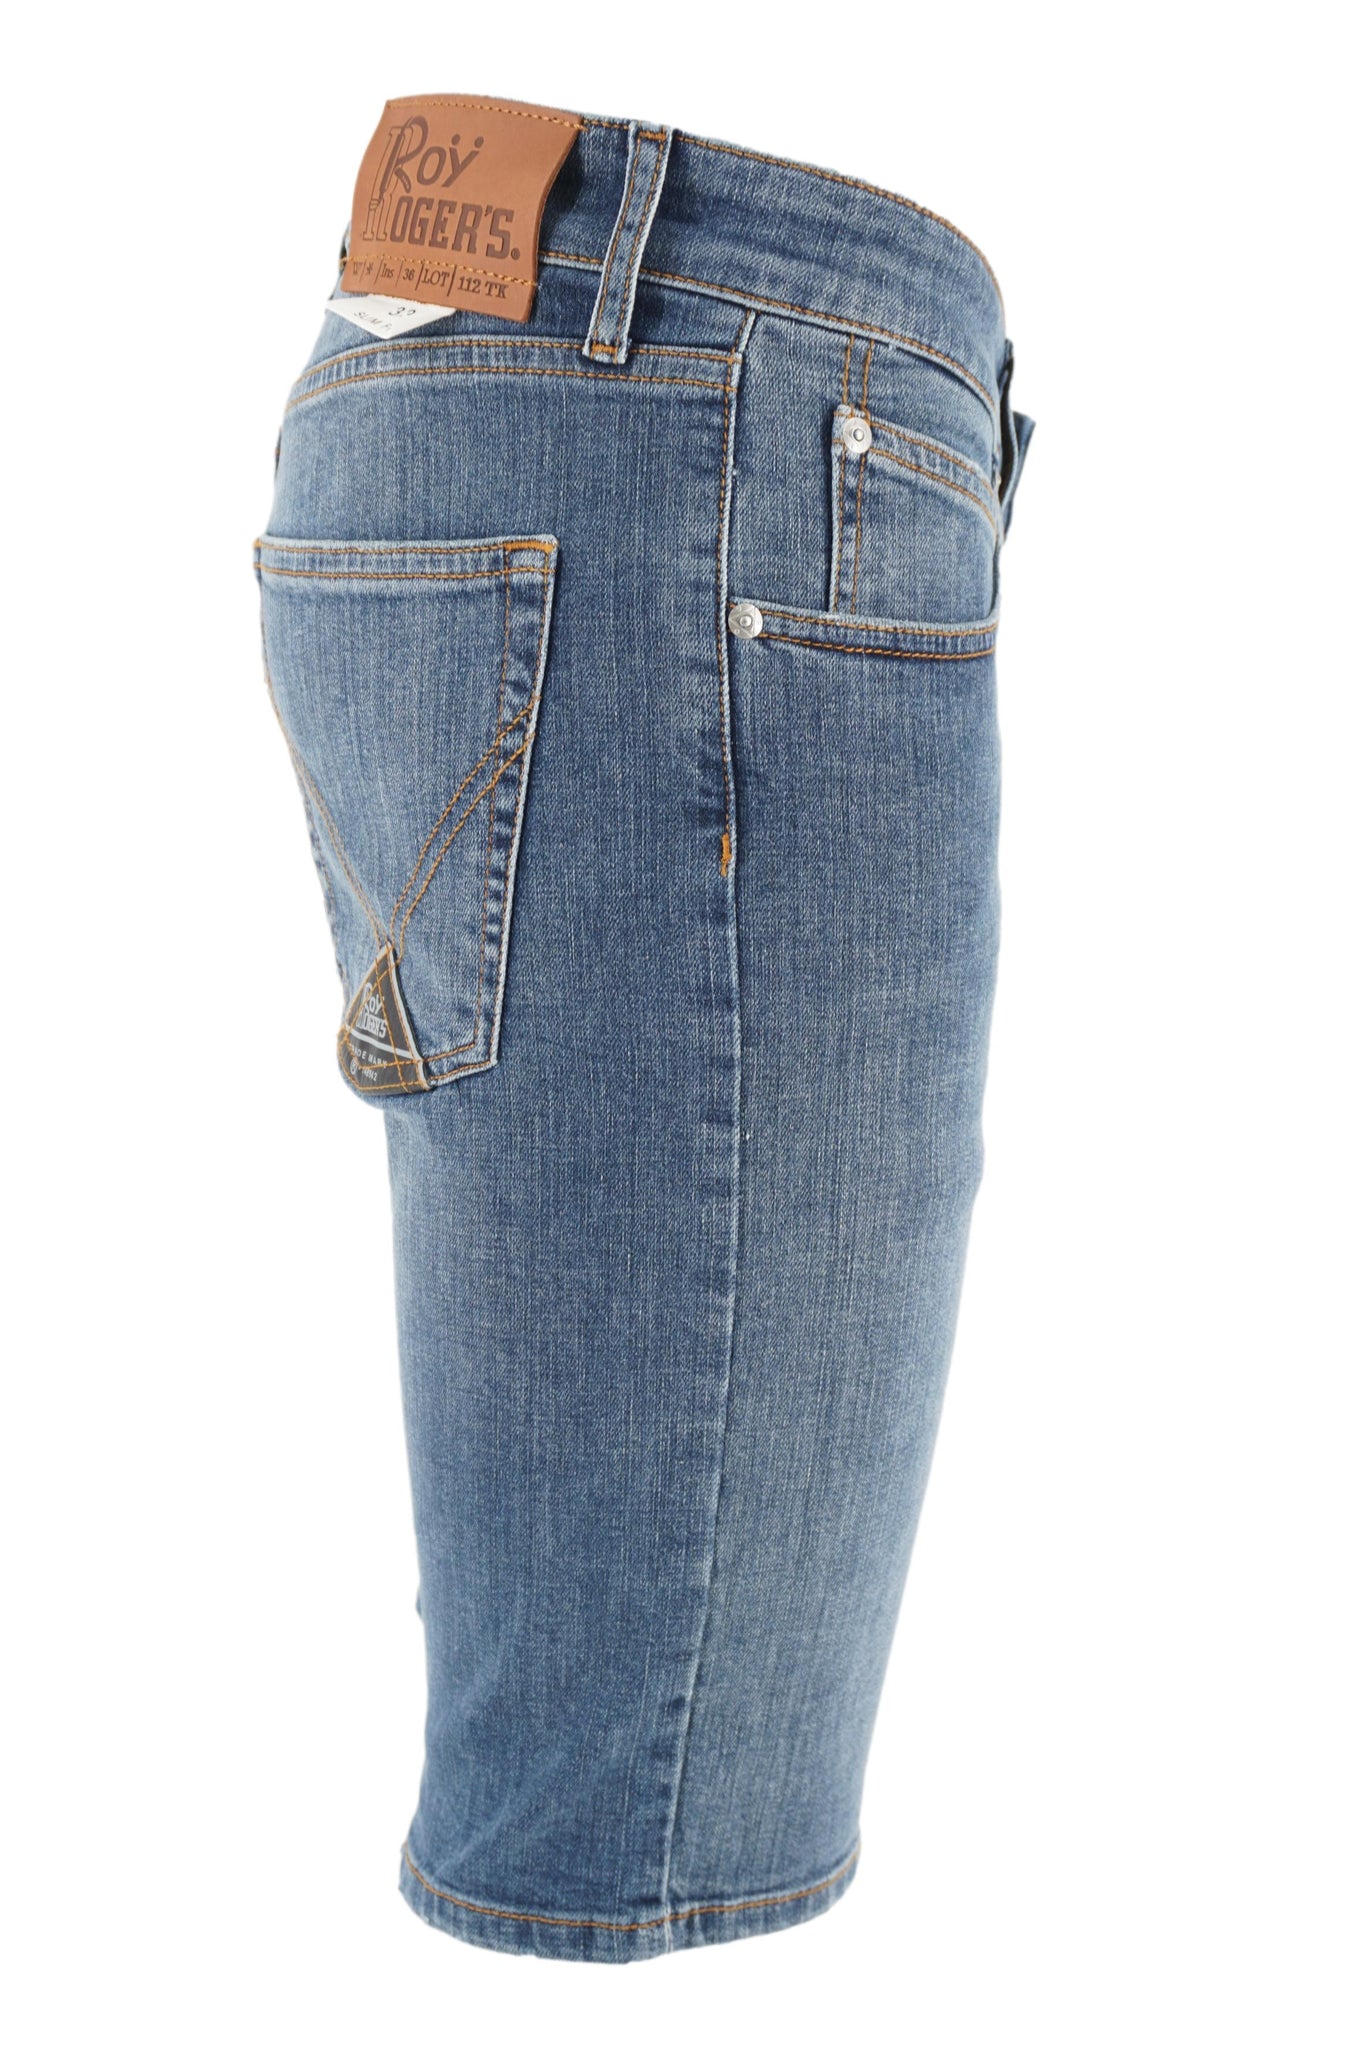 Pantaloncino in Denim / Jeans - Ideal Moda